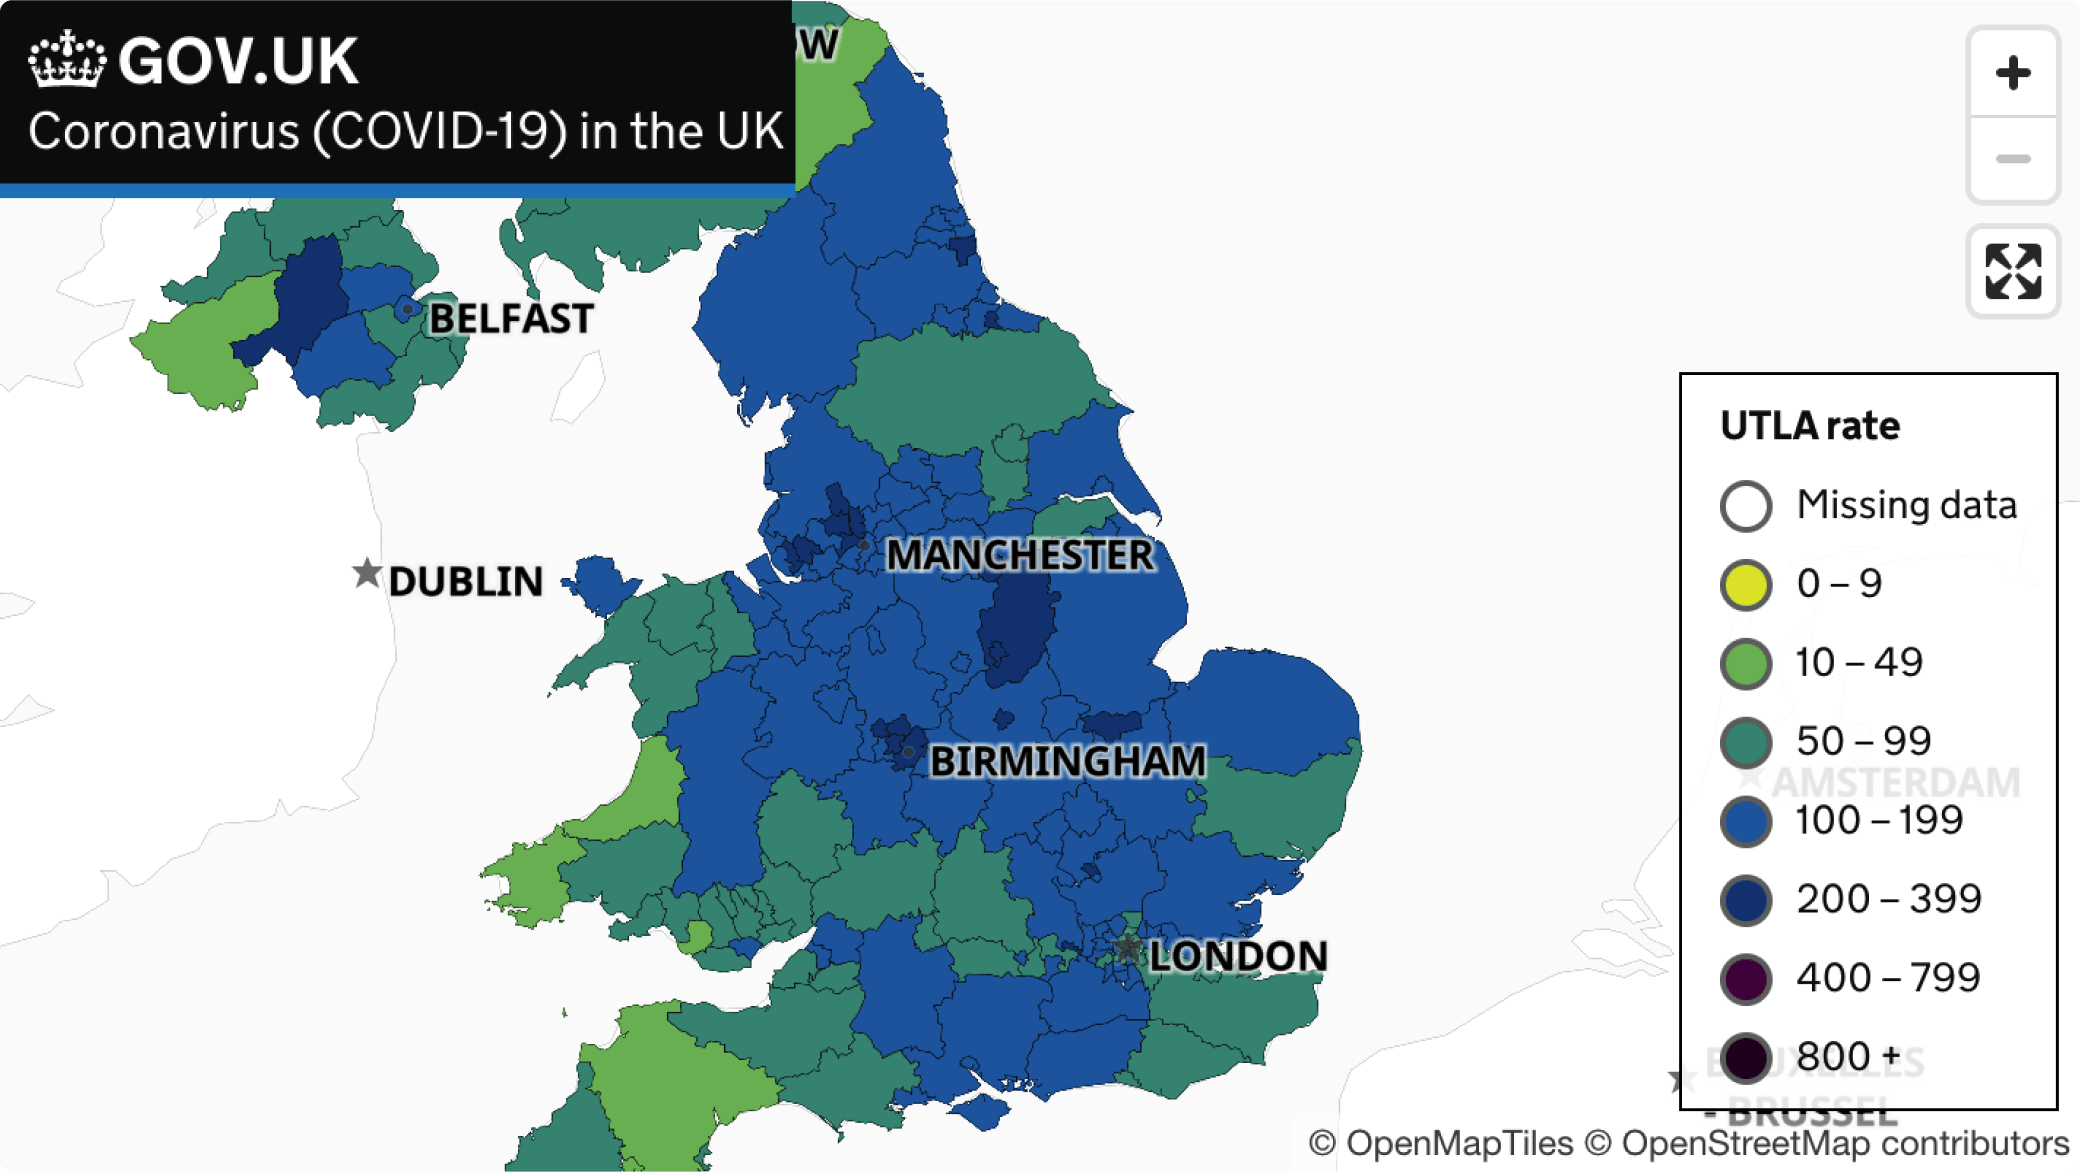 Mappa del governo del Regno Unito con dati Covid